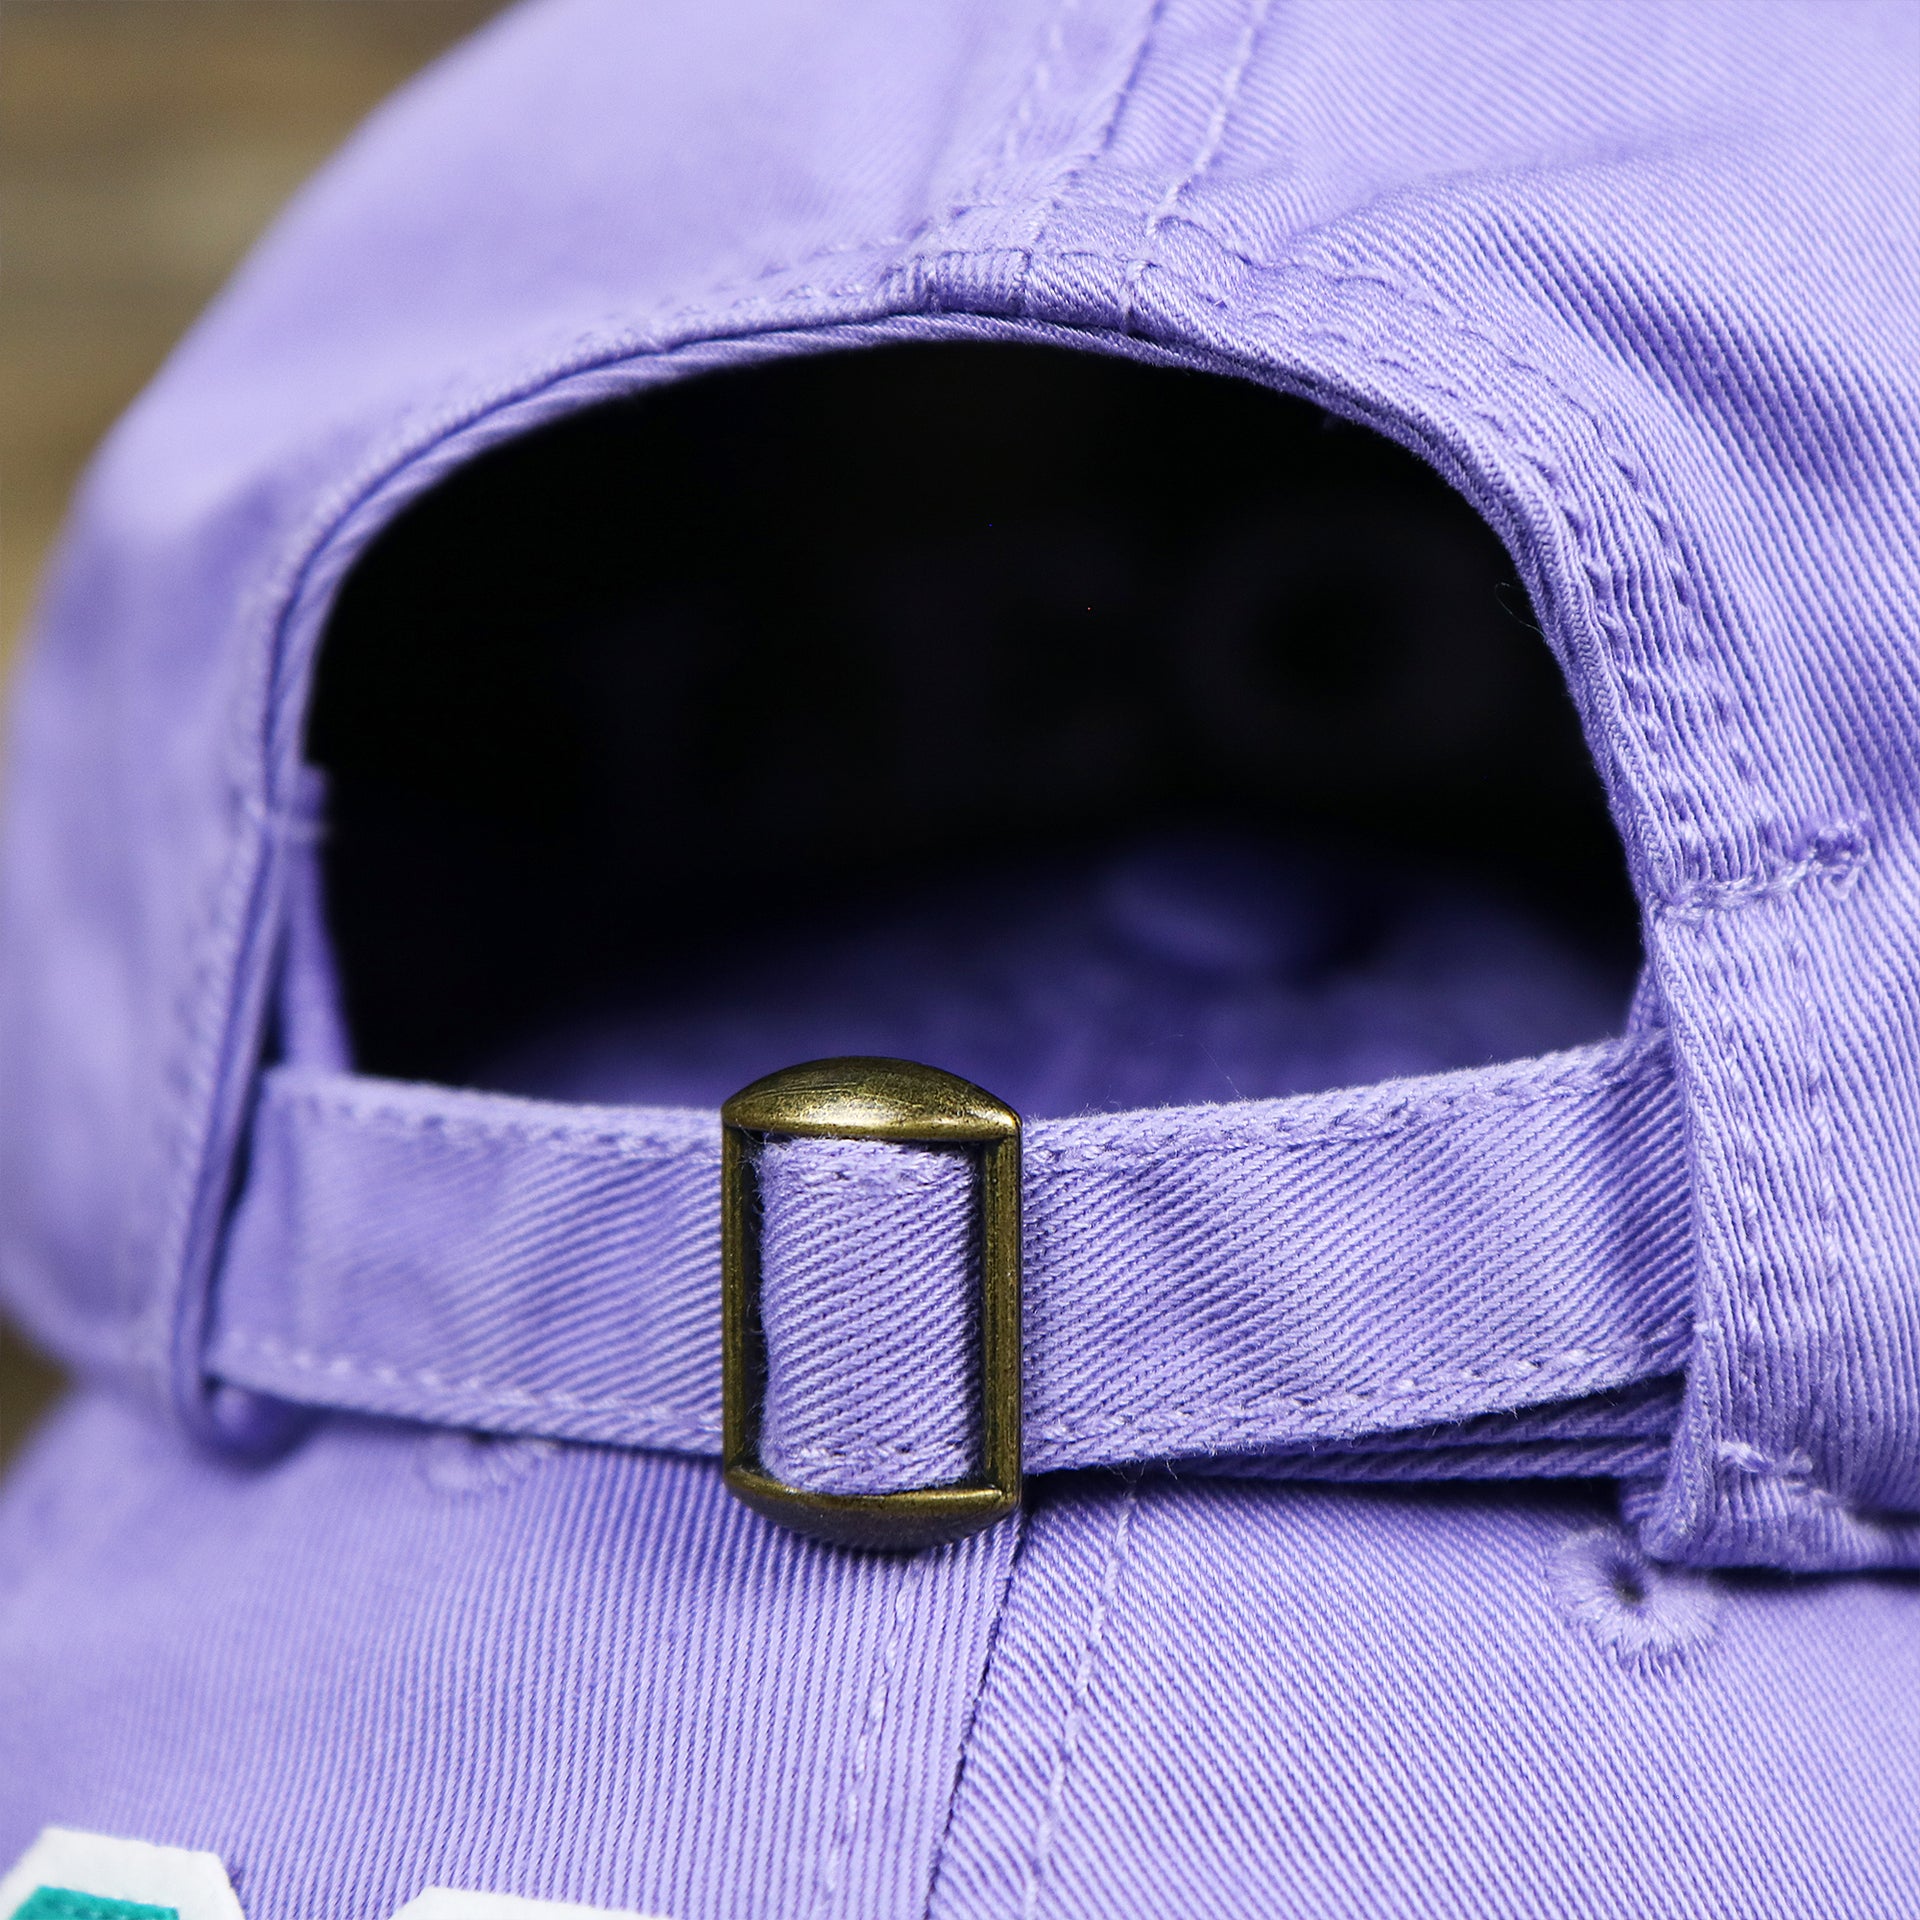 The Lavender Adjustable Strap on the Teal OCNJ Double Wordmark White Outline Bucket Hat | Lavender Bucket Hat